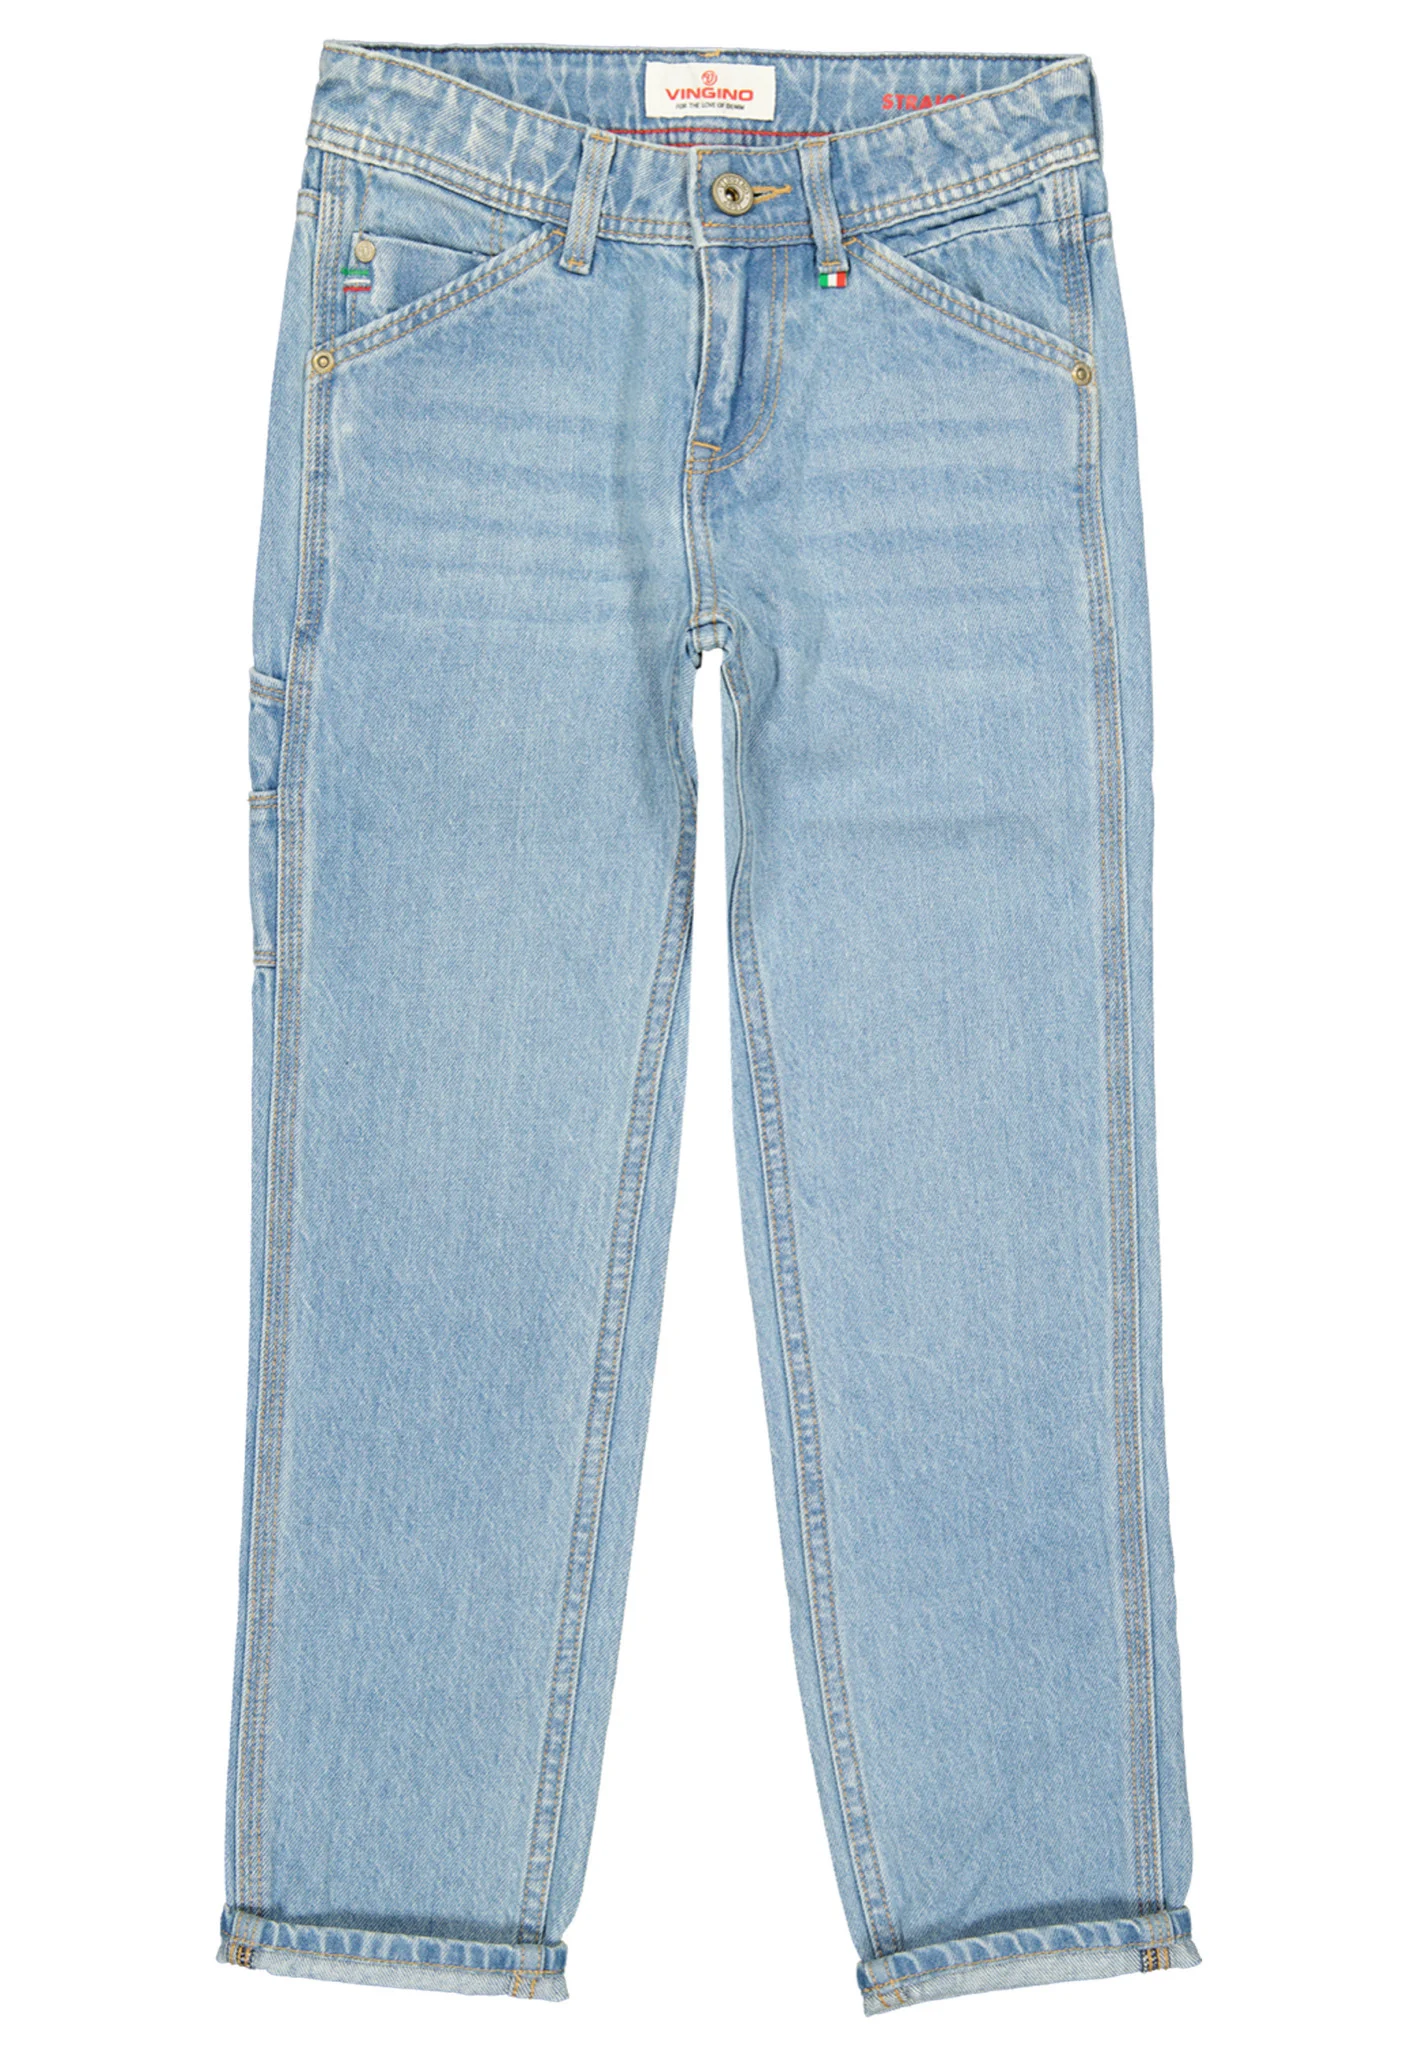 Vingino Jongens jeans peppe straight fit light vintage